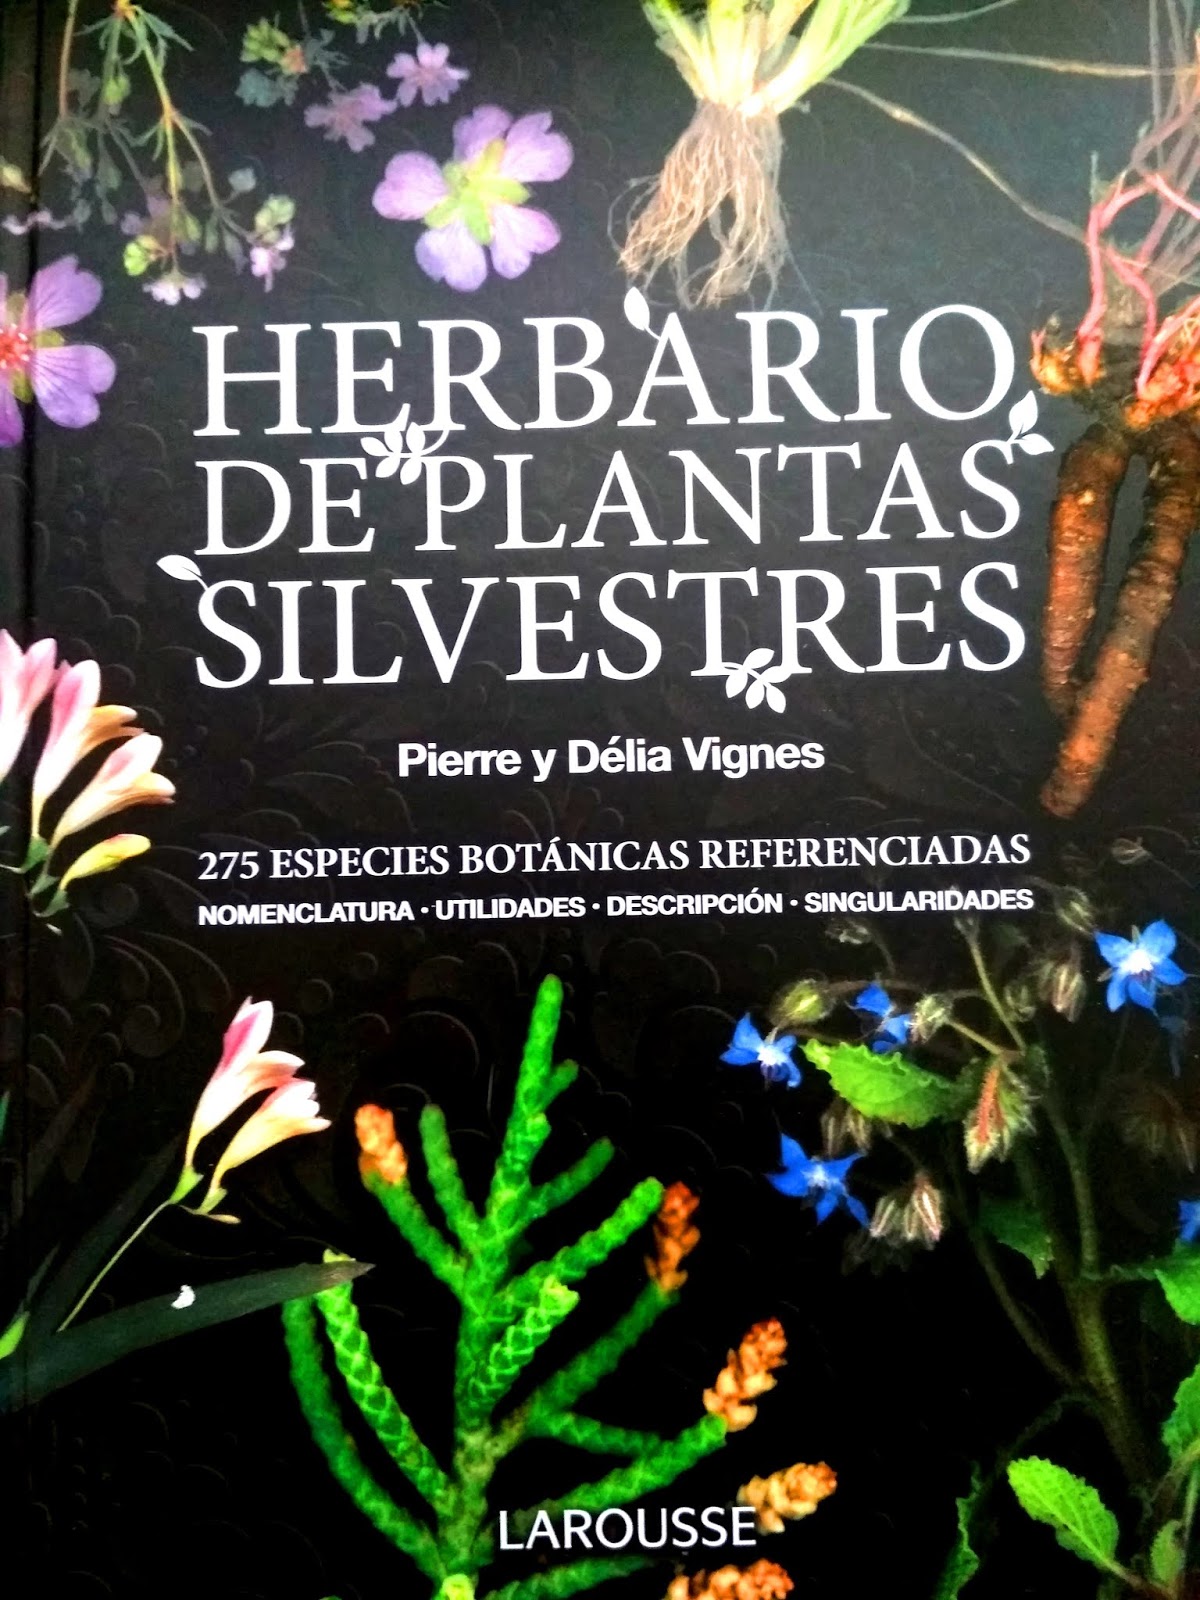 Herbario de plantas silvestres” de la Editorial Larousse